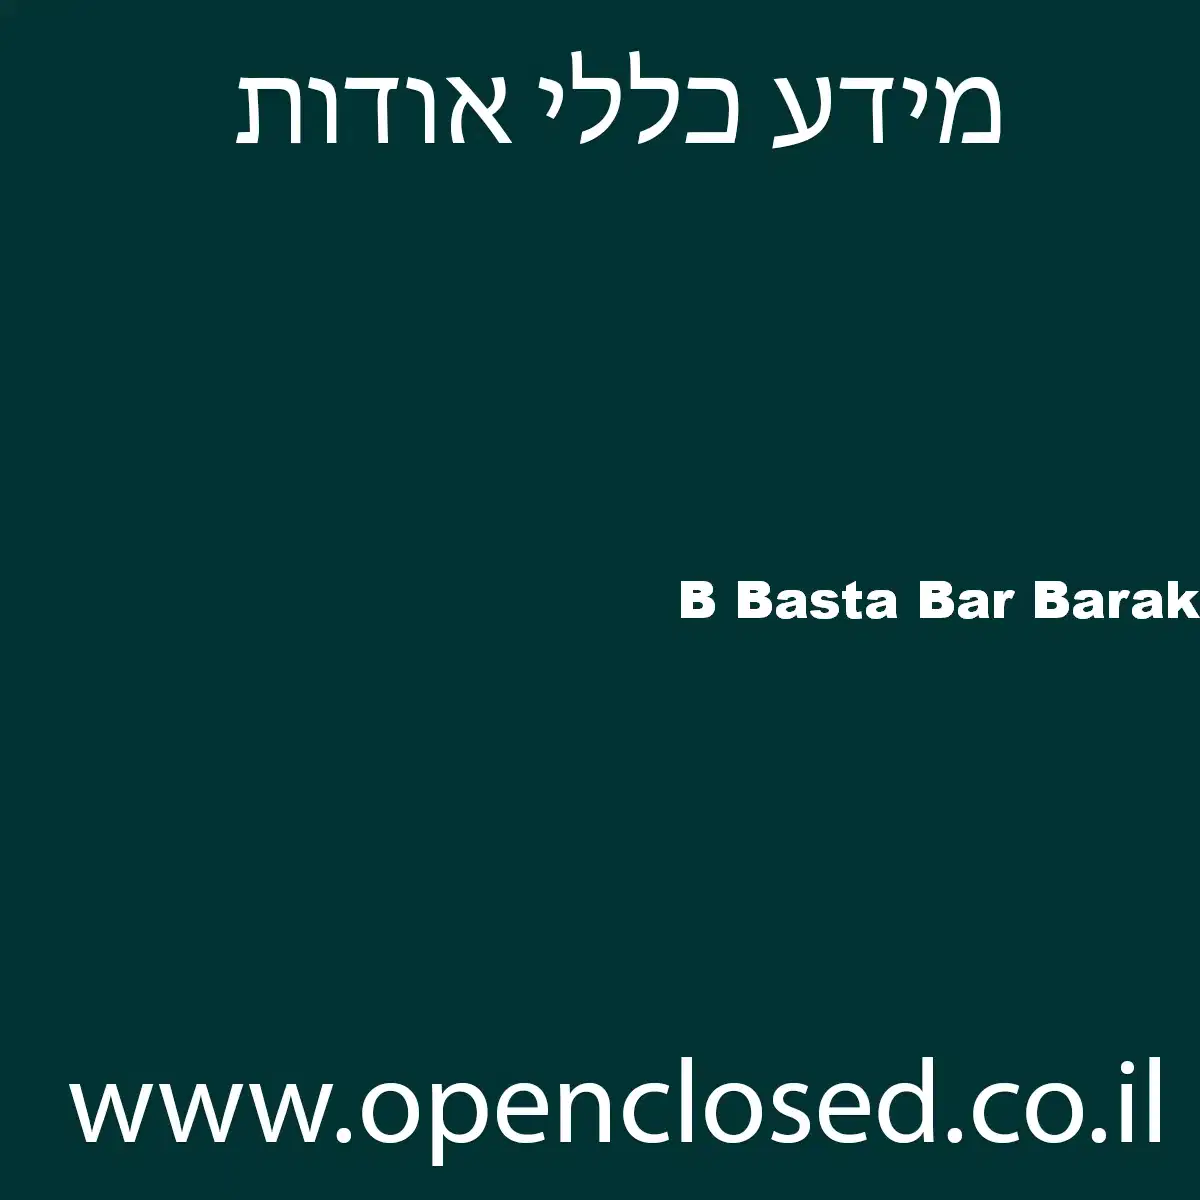 B Basta Bar Barak